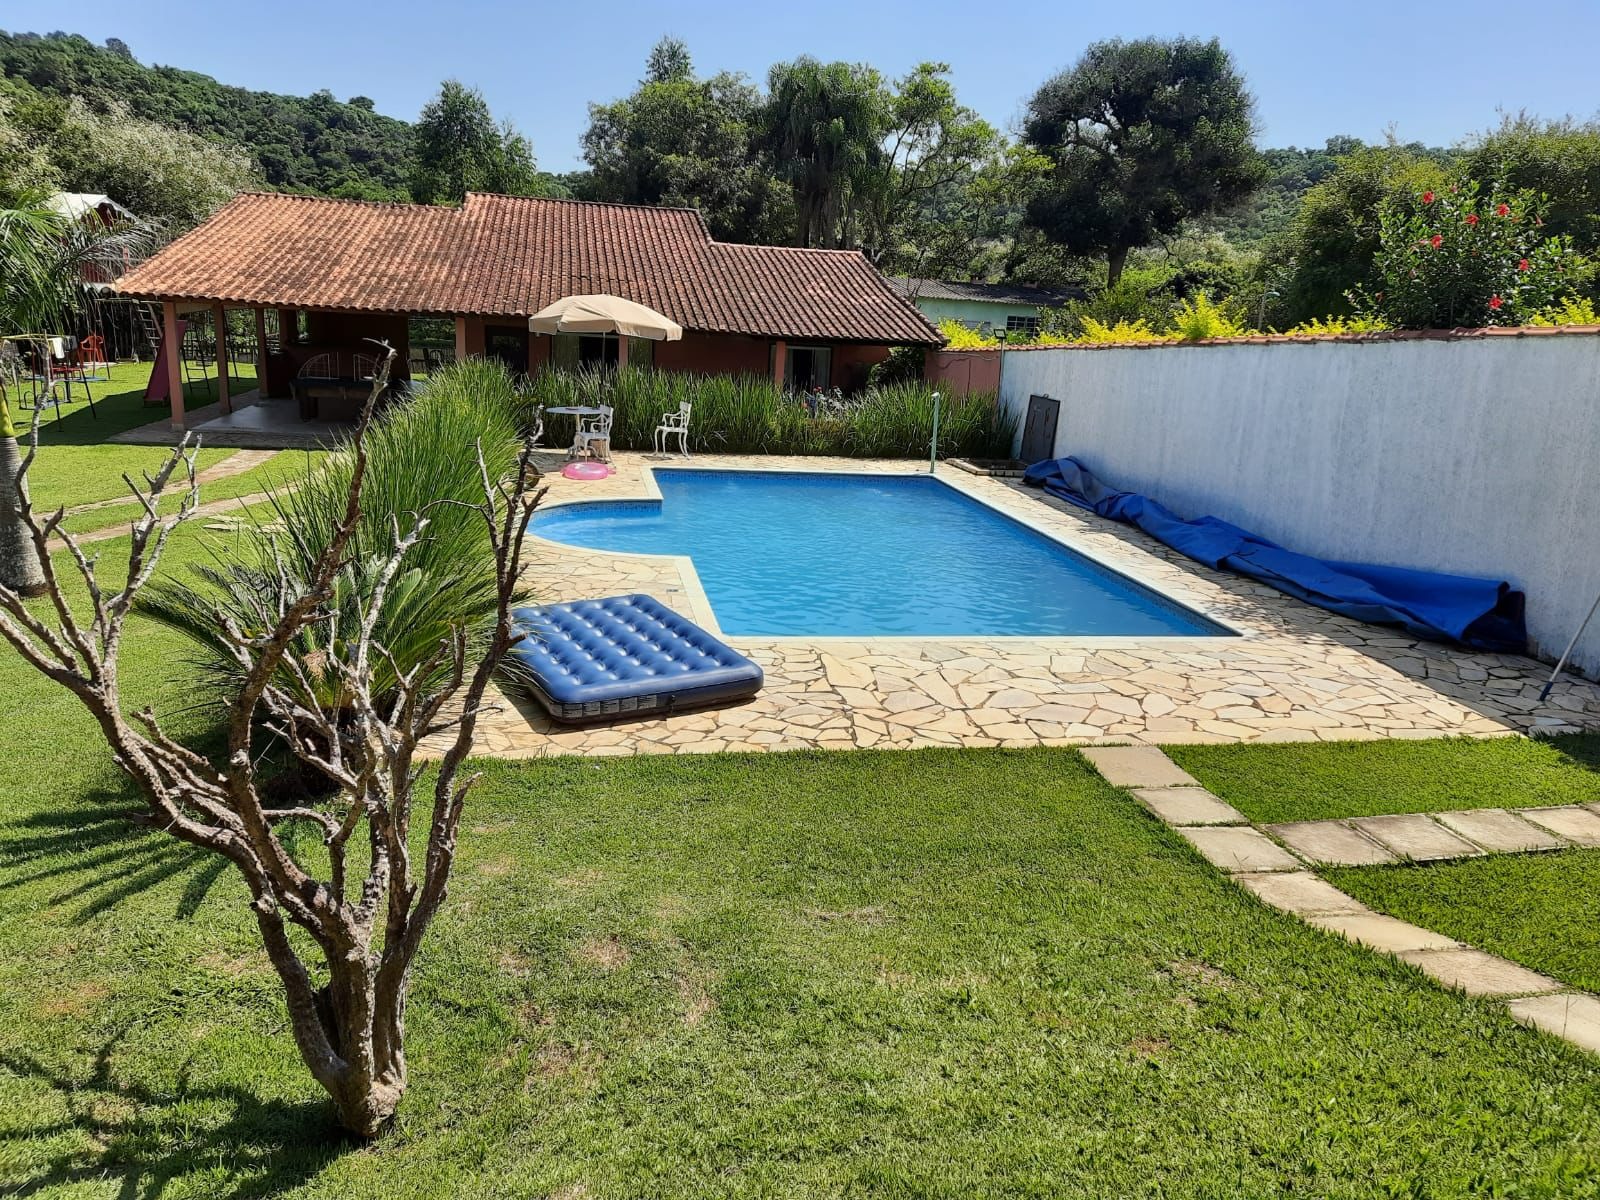  Casa de temporada Casa com Piscina e Sala de Jogos em  Araçoiaba da Serra/SP , Araçoiaba da Serra, Brasil . Reserve seu hotel  agora mesmo!